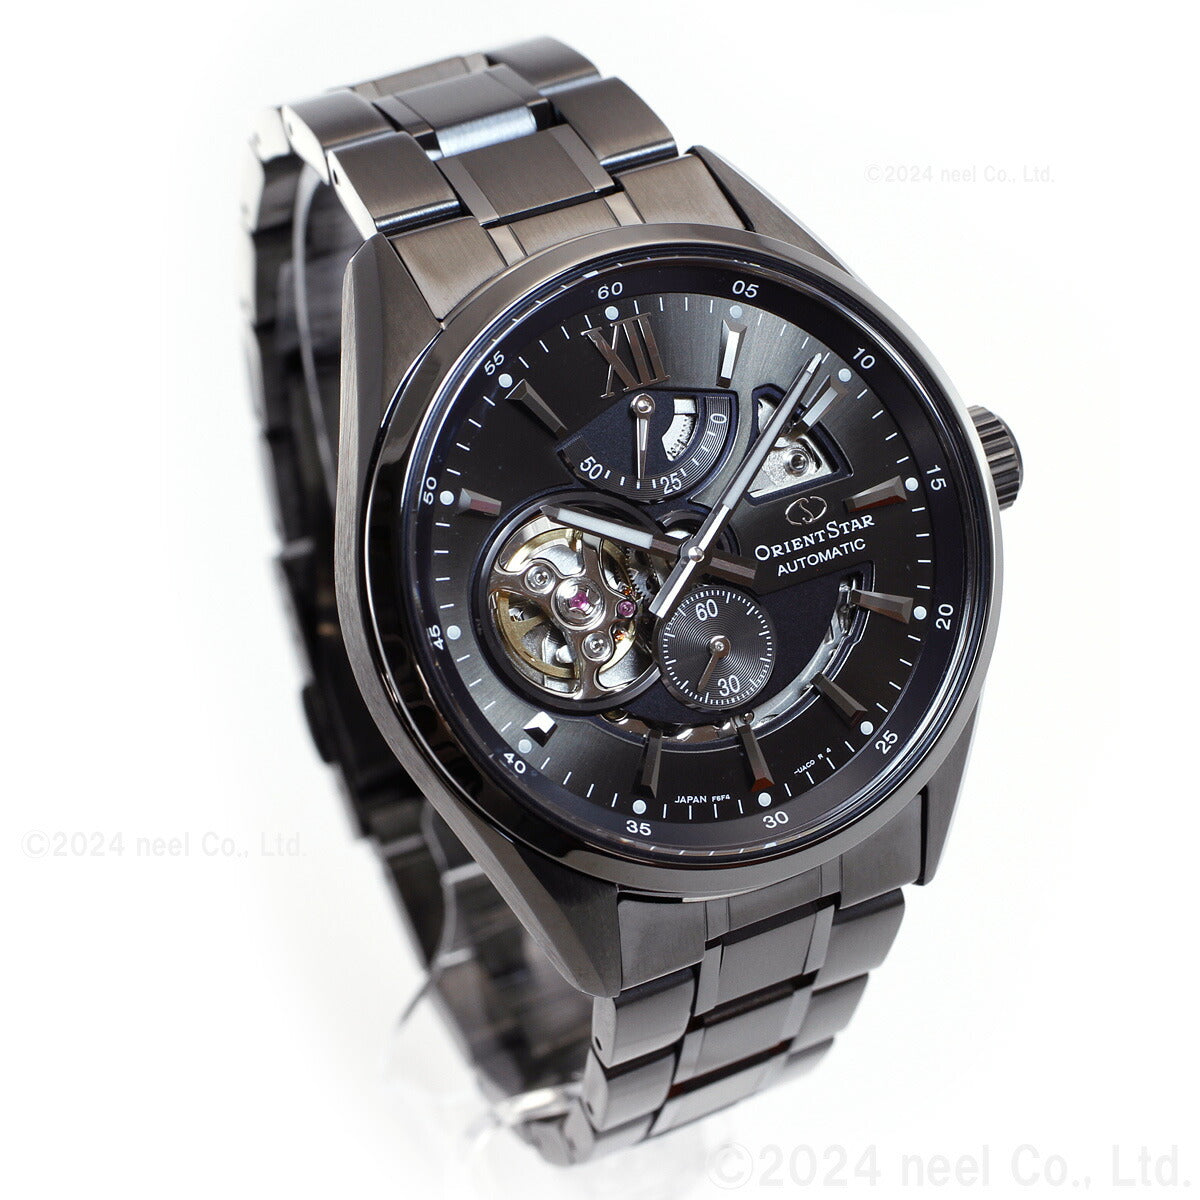 オリエントスター ORIENT STAR コンテンポラリー モダンスケルトン 限定モデル 腕時計 メンズ 自動巻き 機械式 RK-AV0126B【2024 新作】